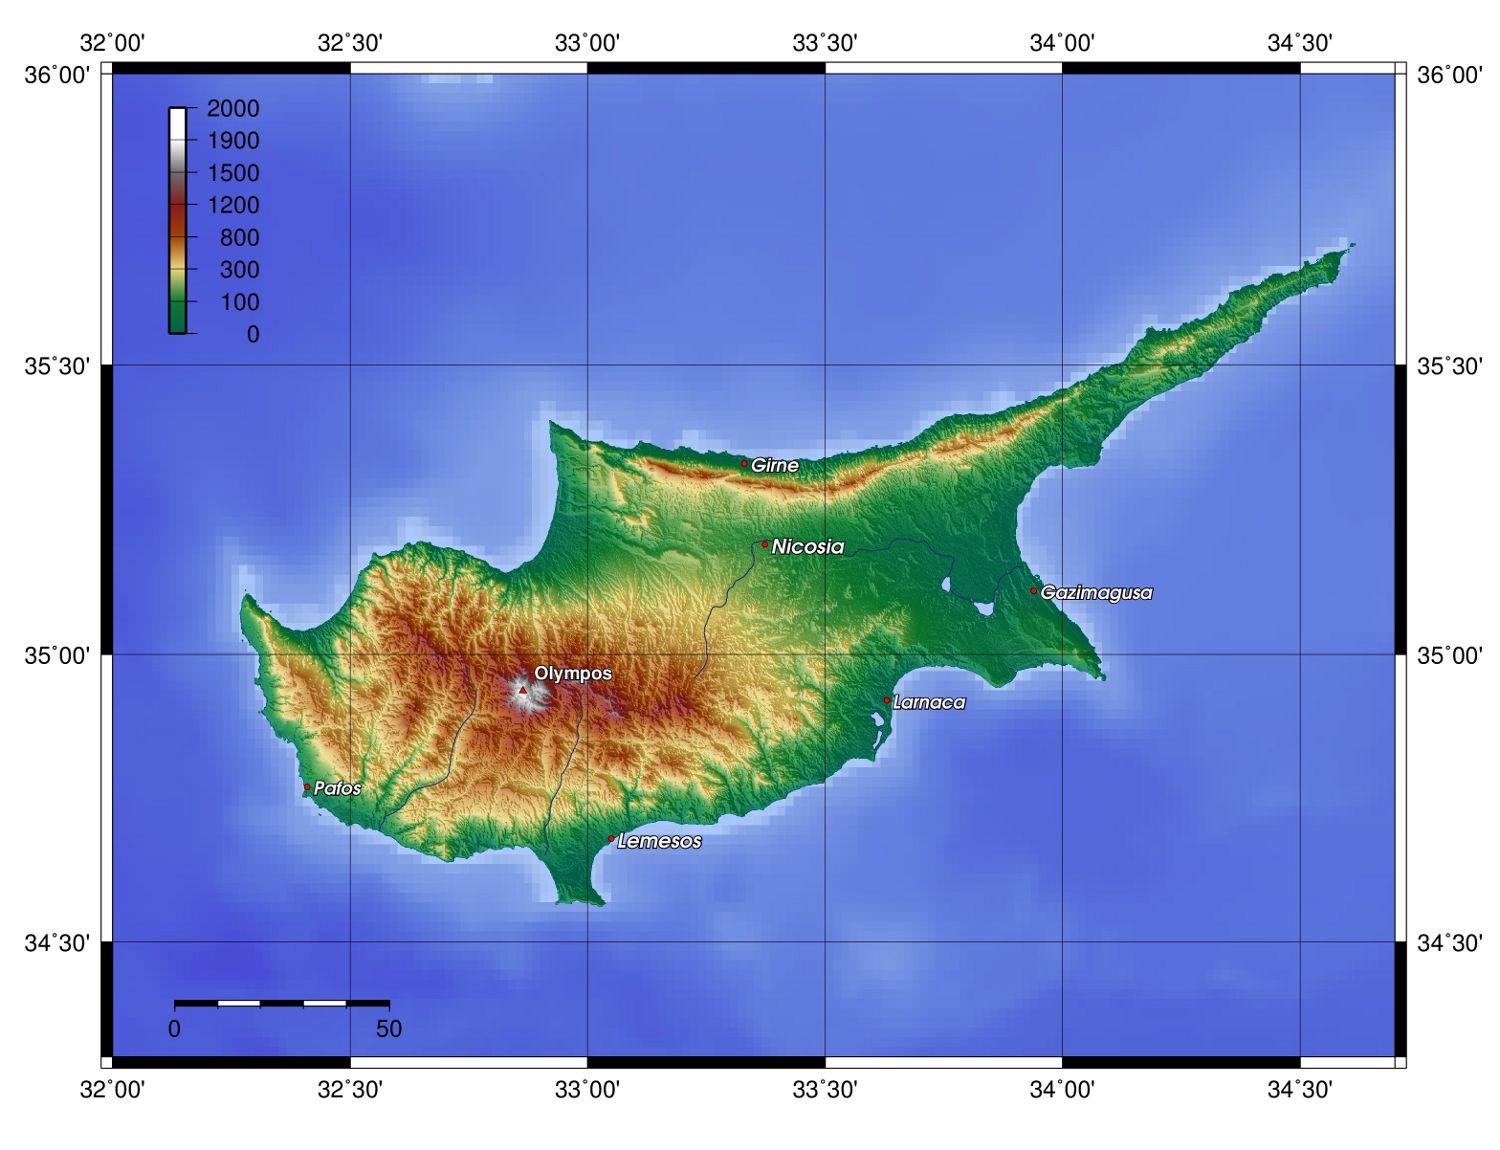 Image:Cyprus topo